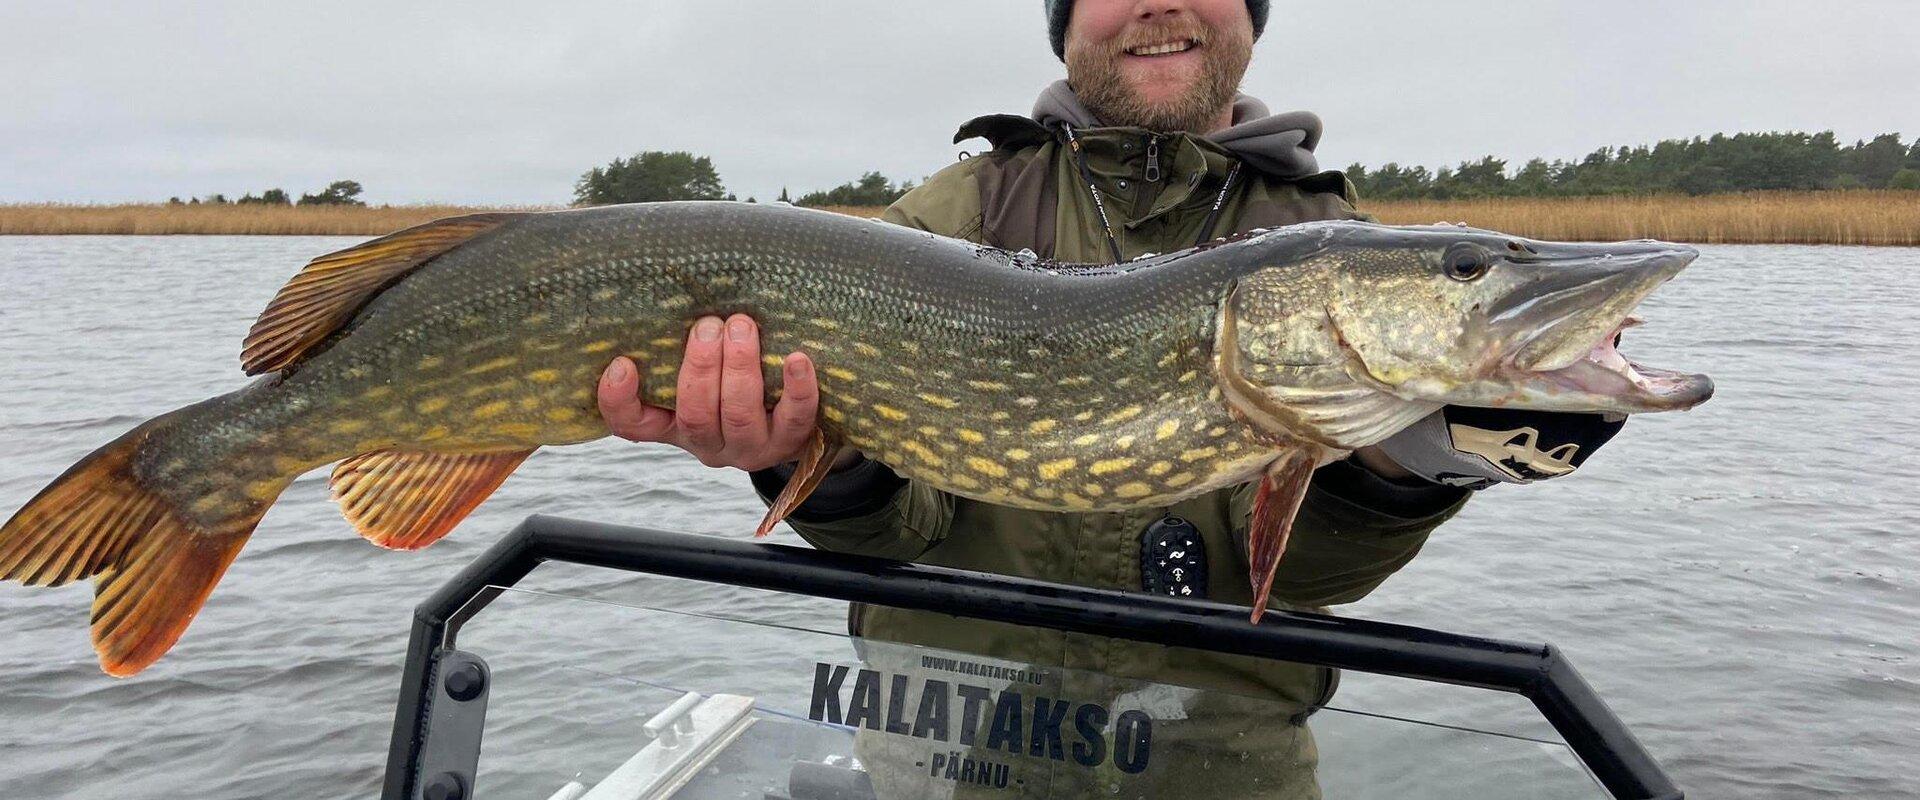 Pärnu Kalatakso kalastusretked